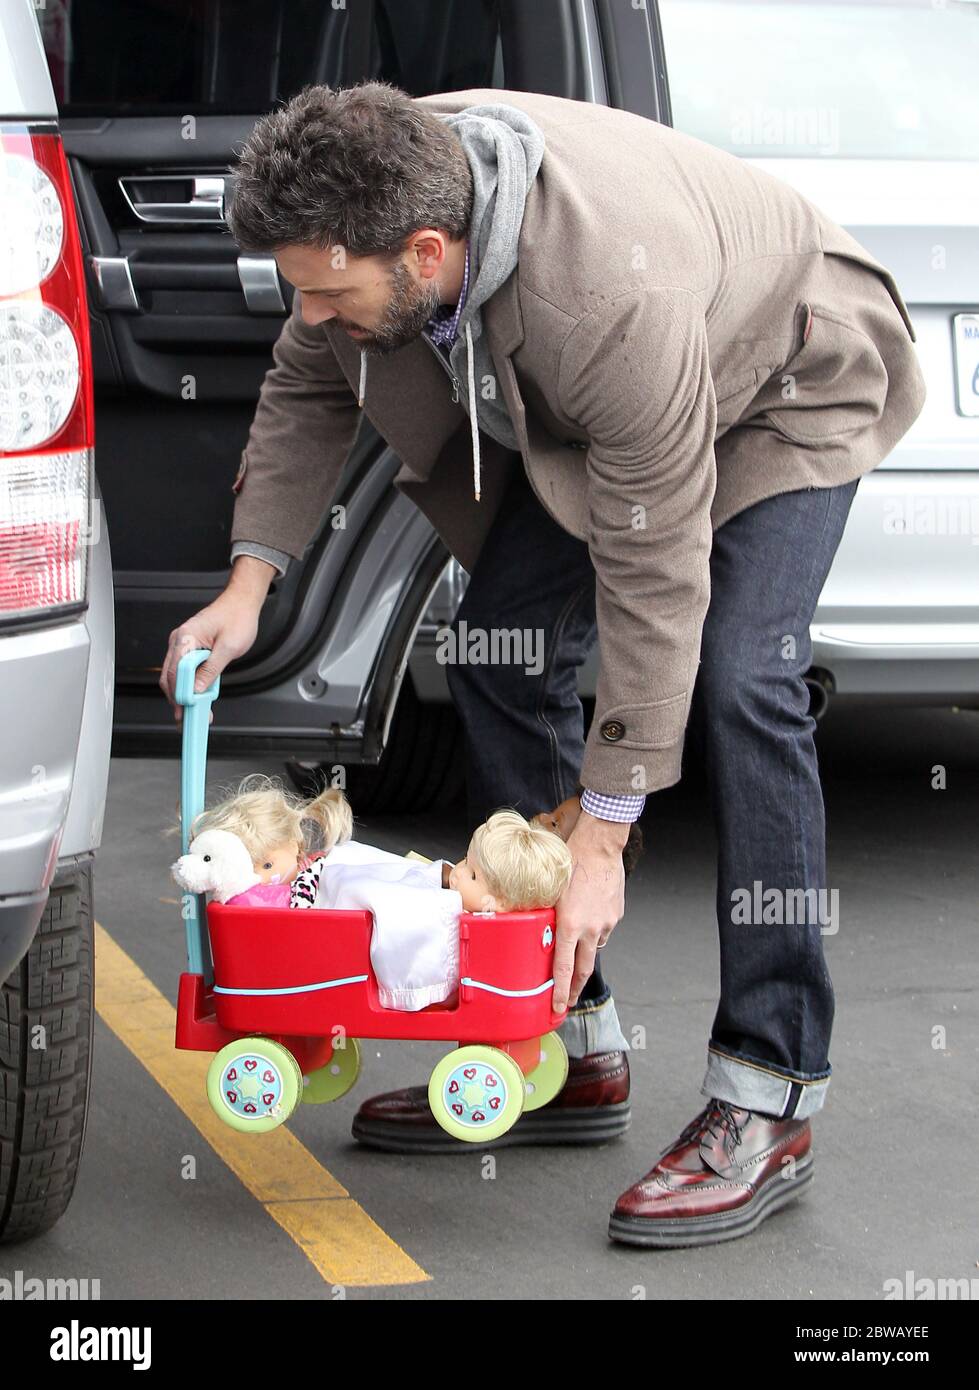 Ben Affleck emmène ses filles Violet et Seraphina au marché agricole, Pacific Palisades, Californie, 27 janvier 2013 Banque D'Images